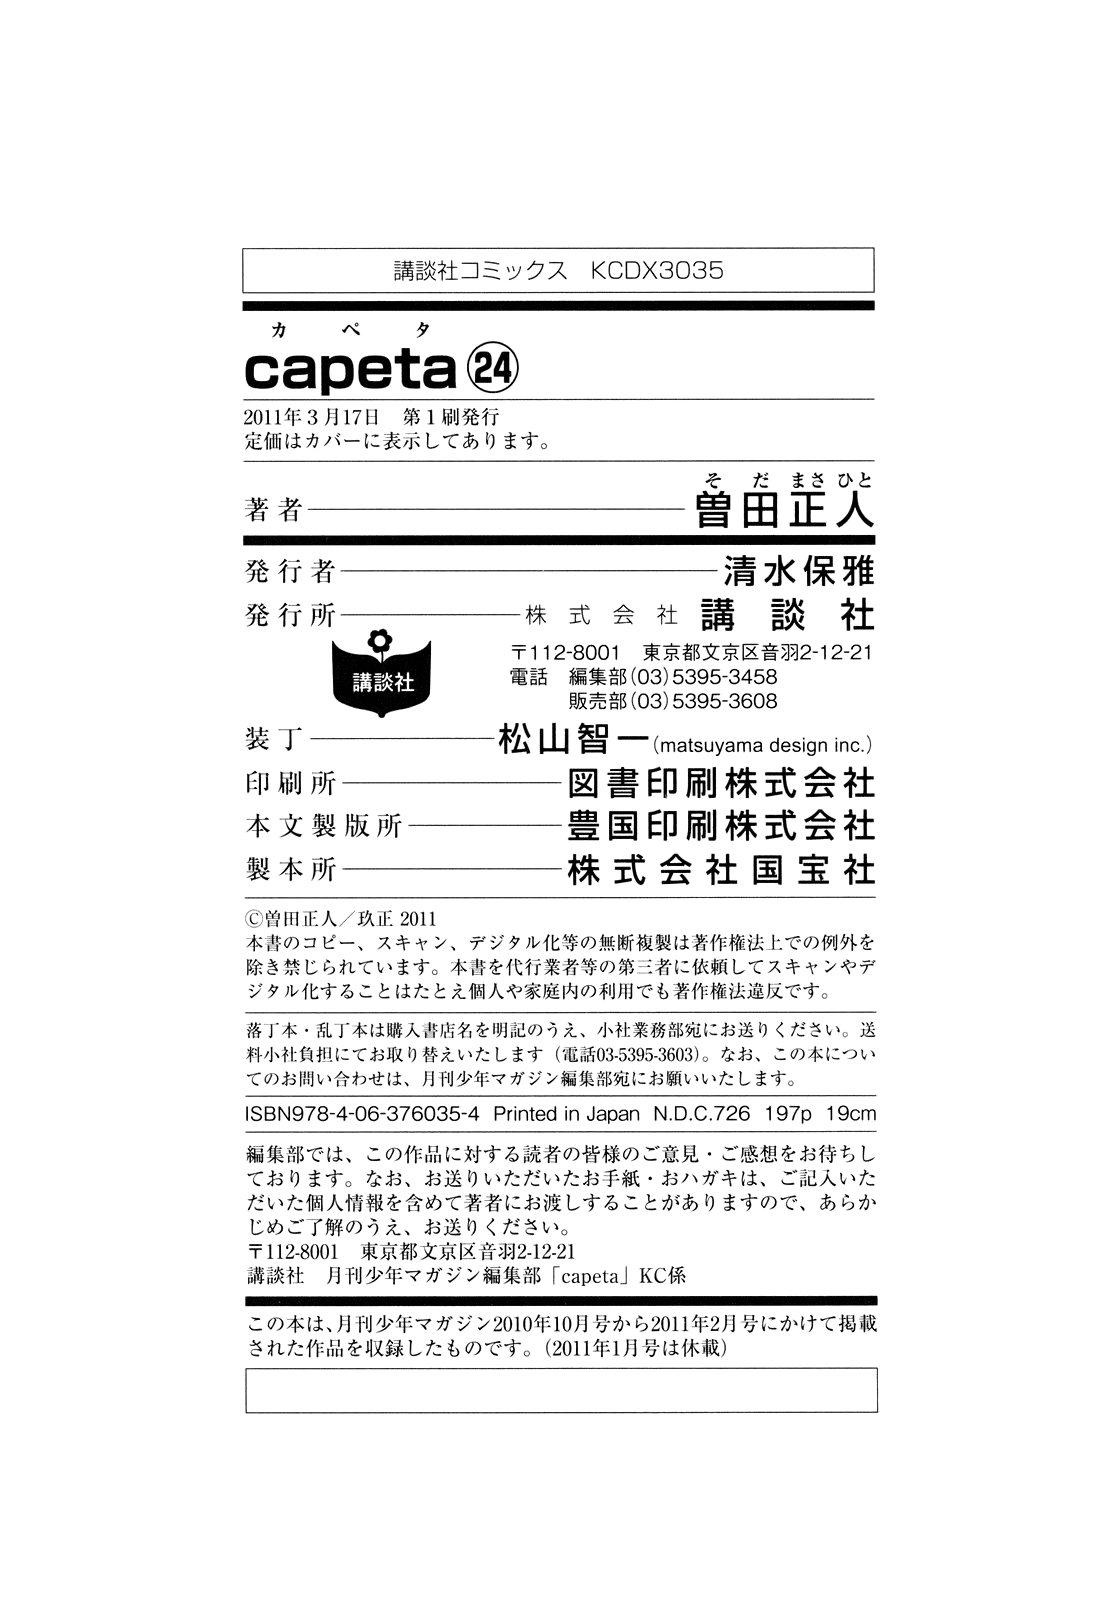 Capeta Vol. 24 Ch. 91